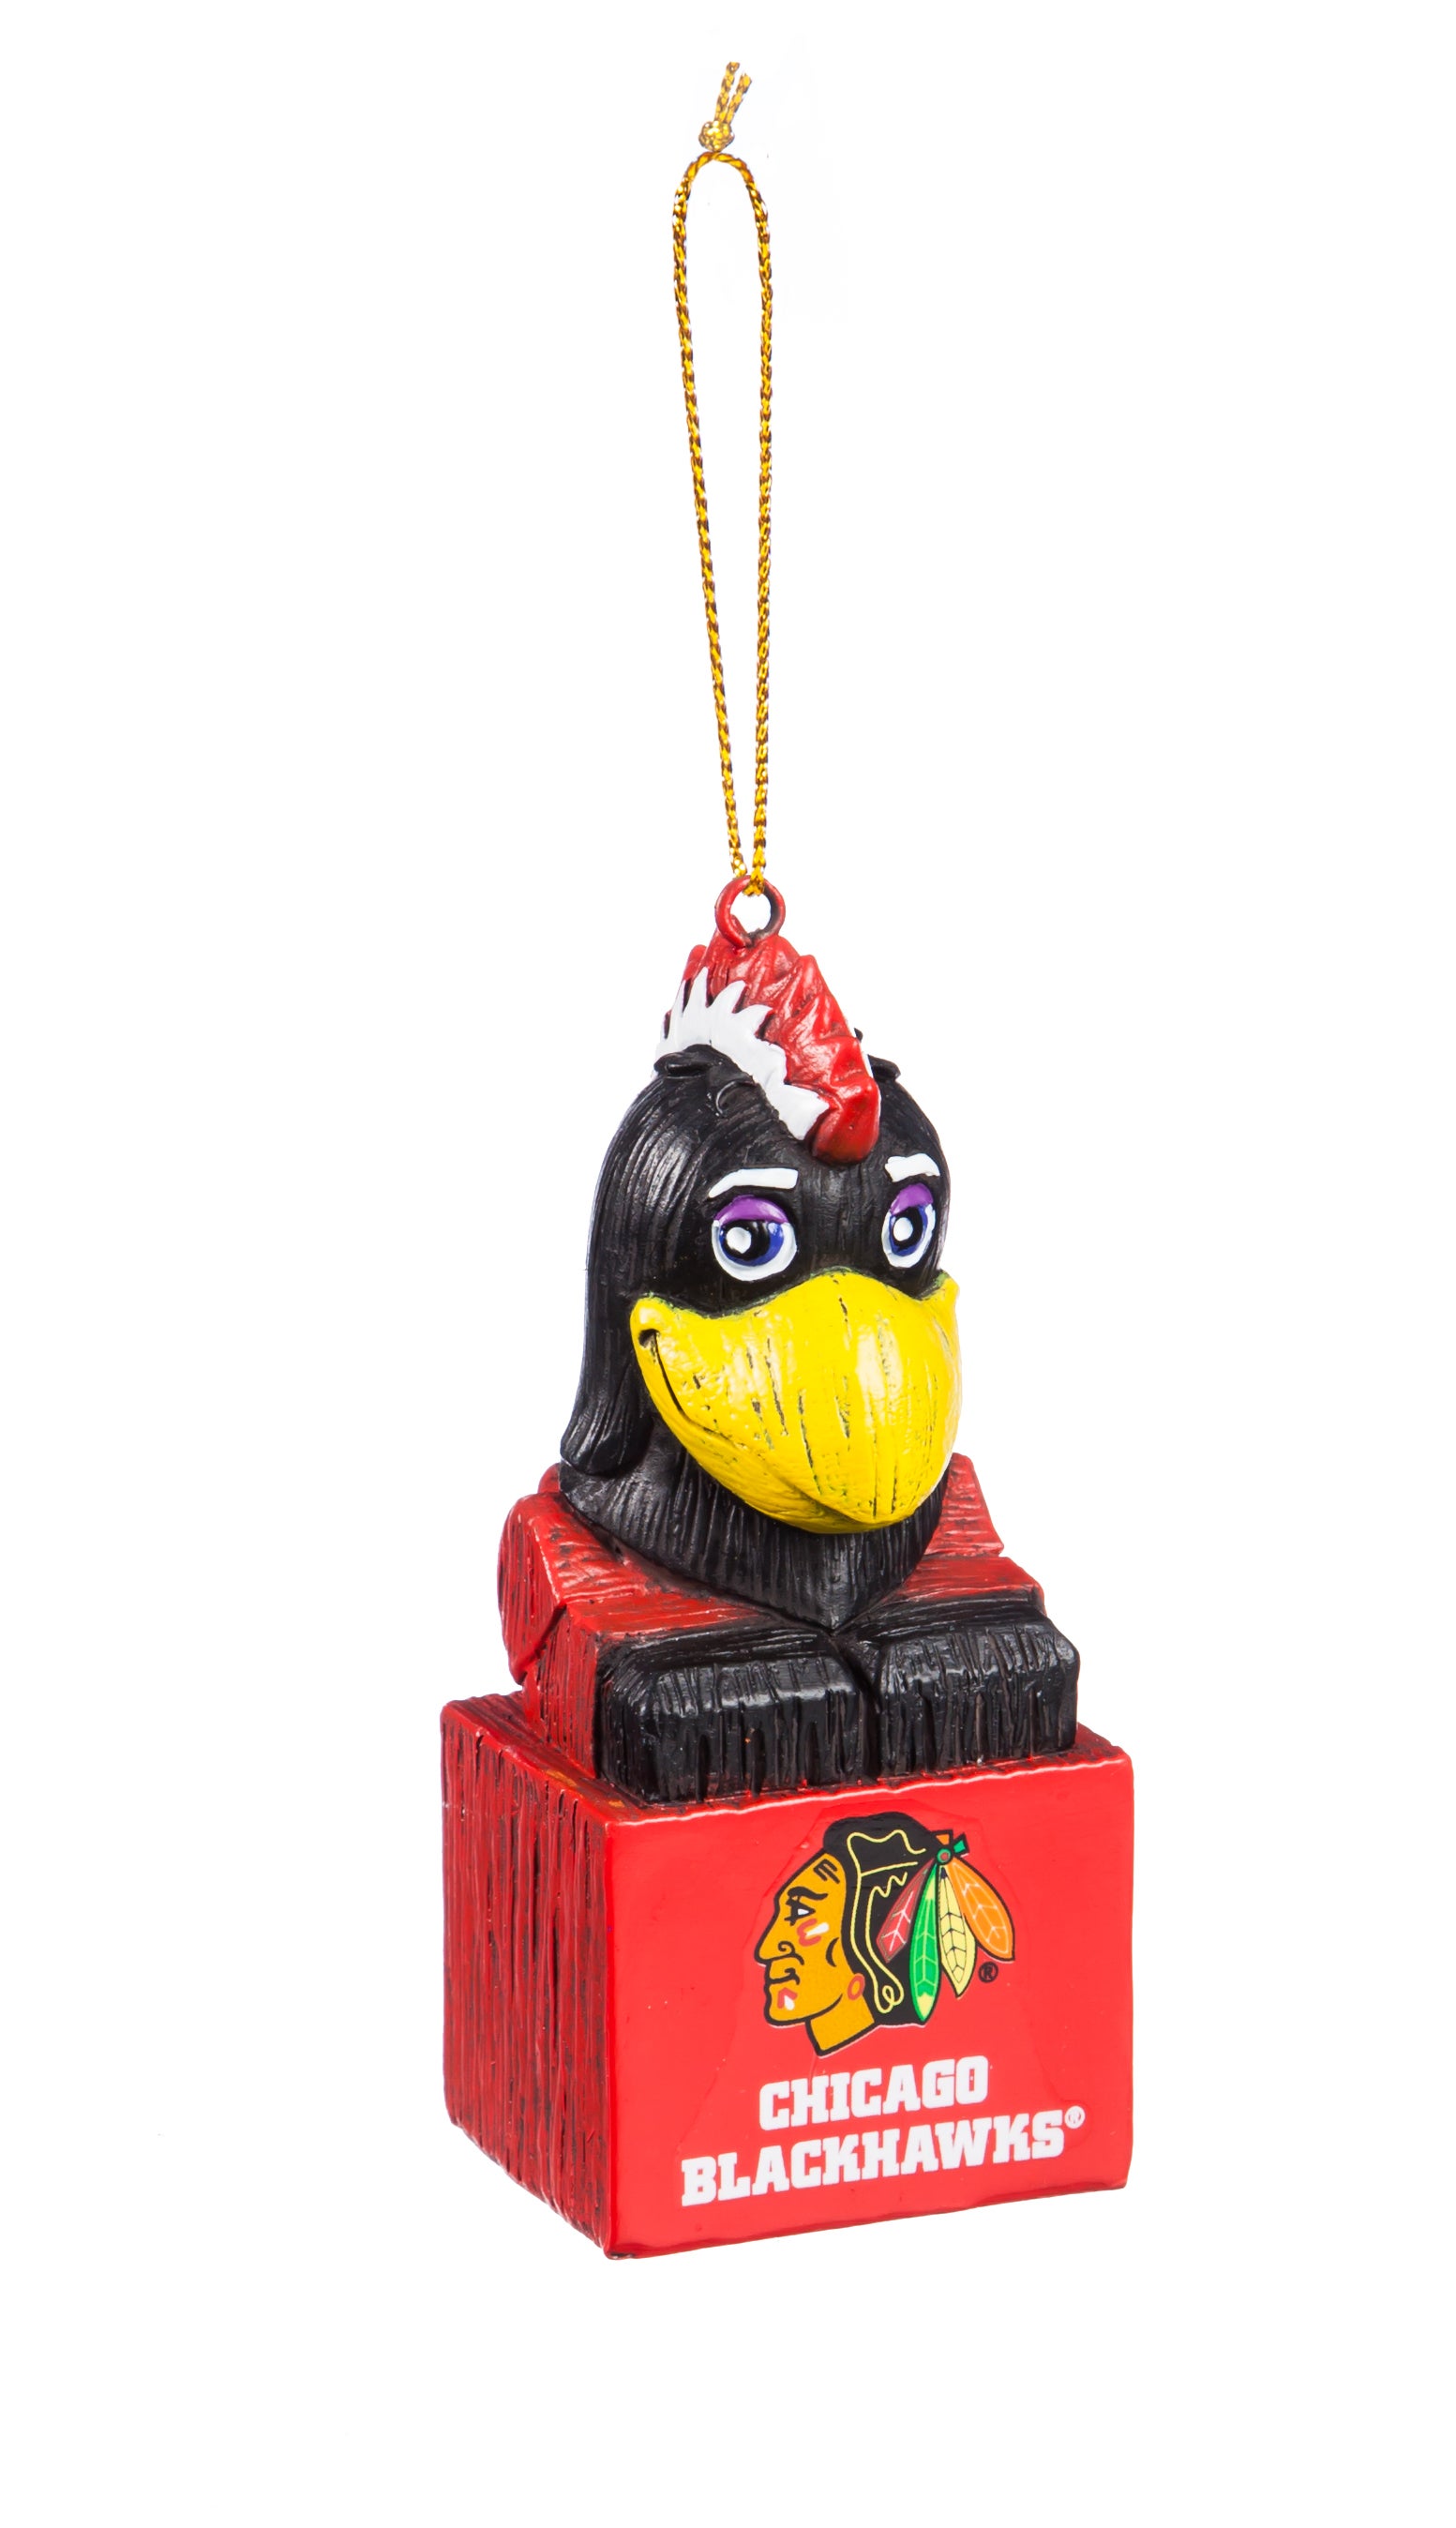 Chicago Blackhawks Mascot Ornament